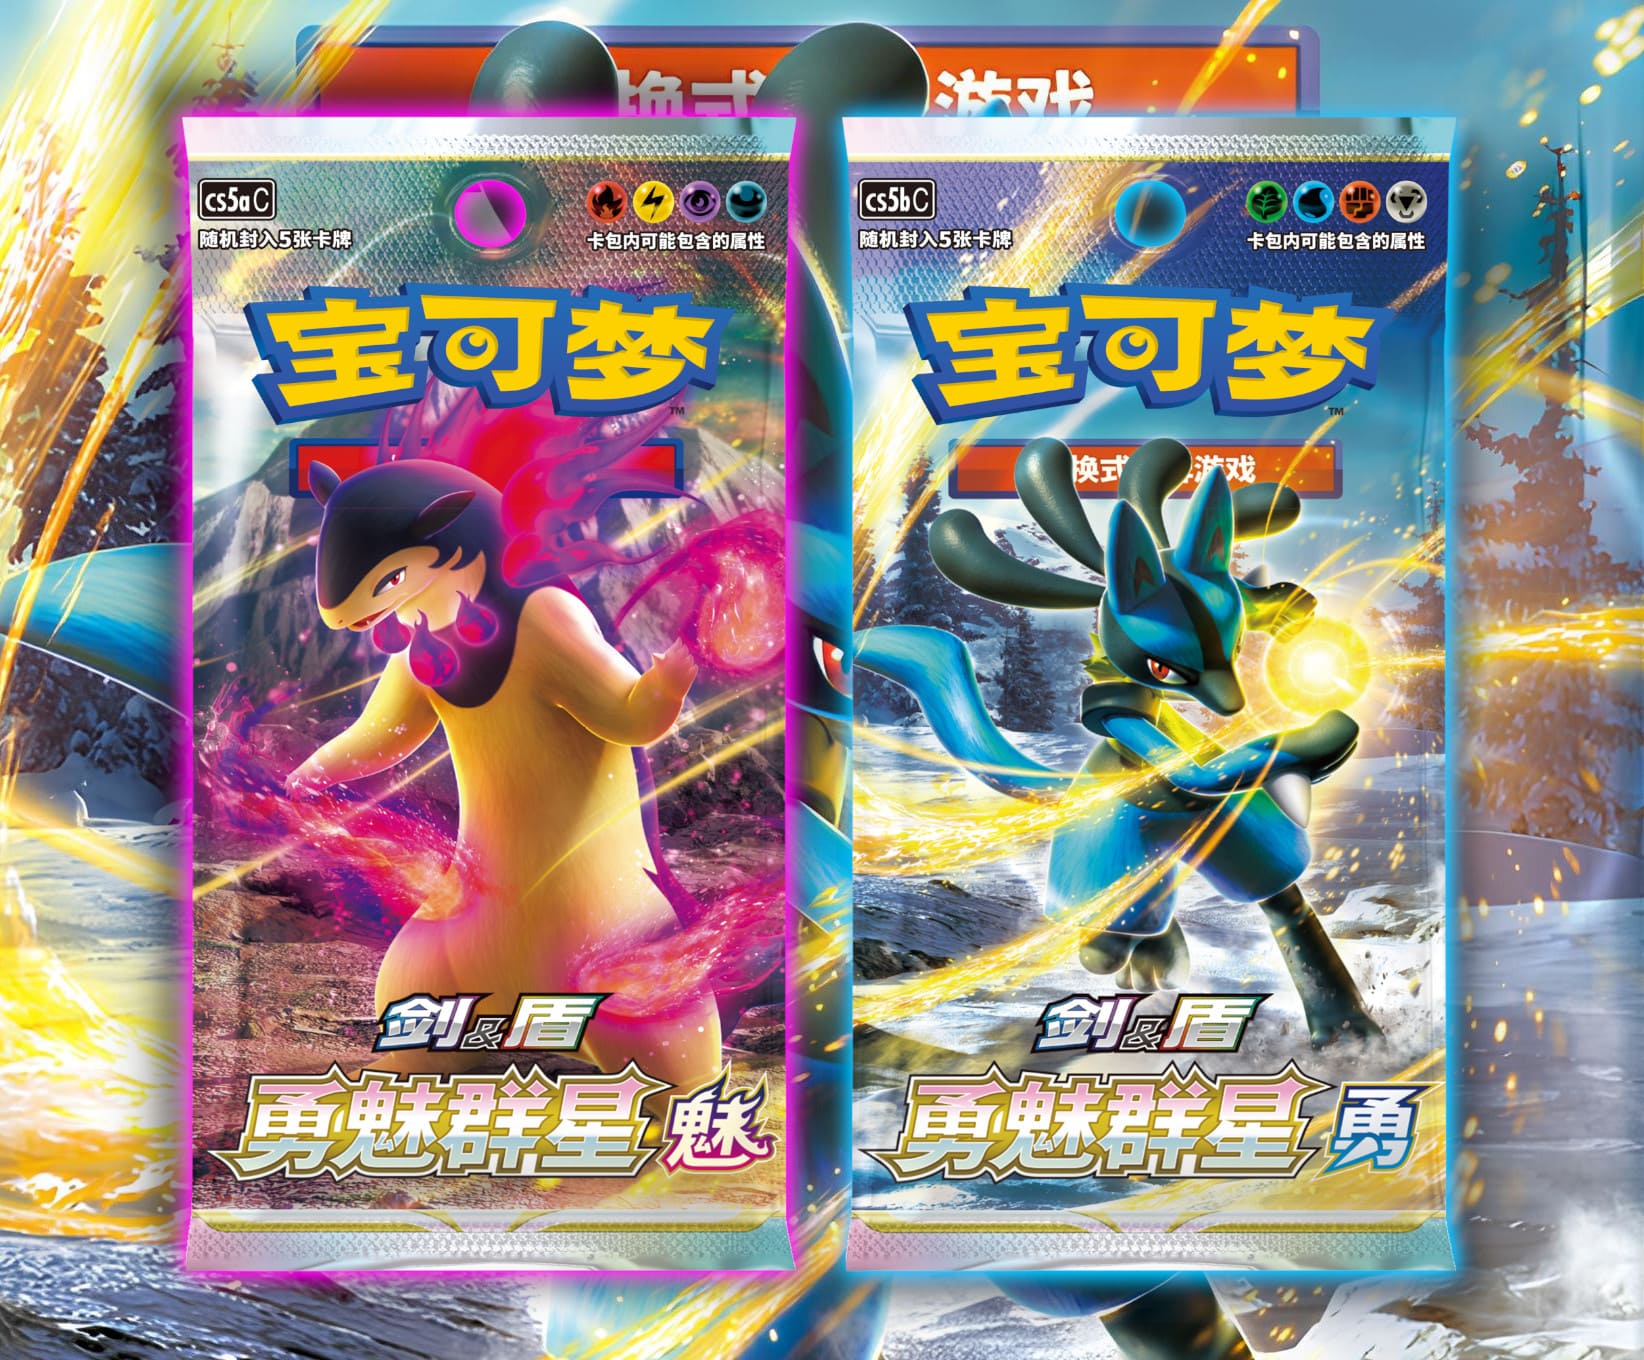 Pokémon-Brave-Stars-CS5aC-CS5bC-Set-Erweiterung-China